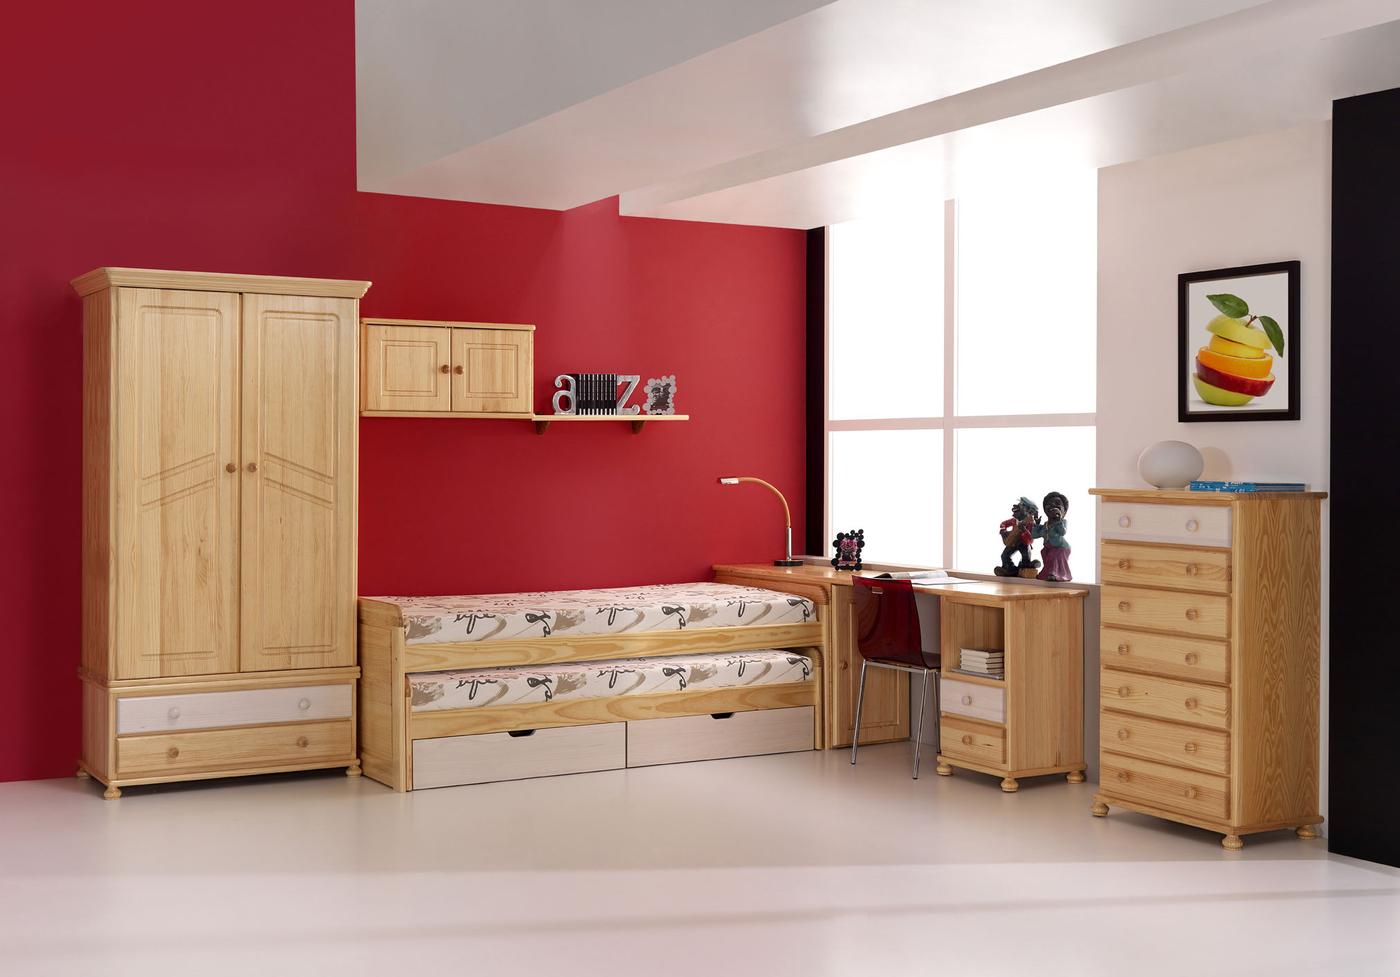 Xinfonier Pino 70 cm. - Sifonier de 7 cajones para dormitorio juvenil o matrimonio, de madera de pino maciza, pintado en una amplia gama de colores.